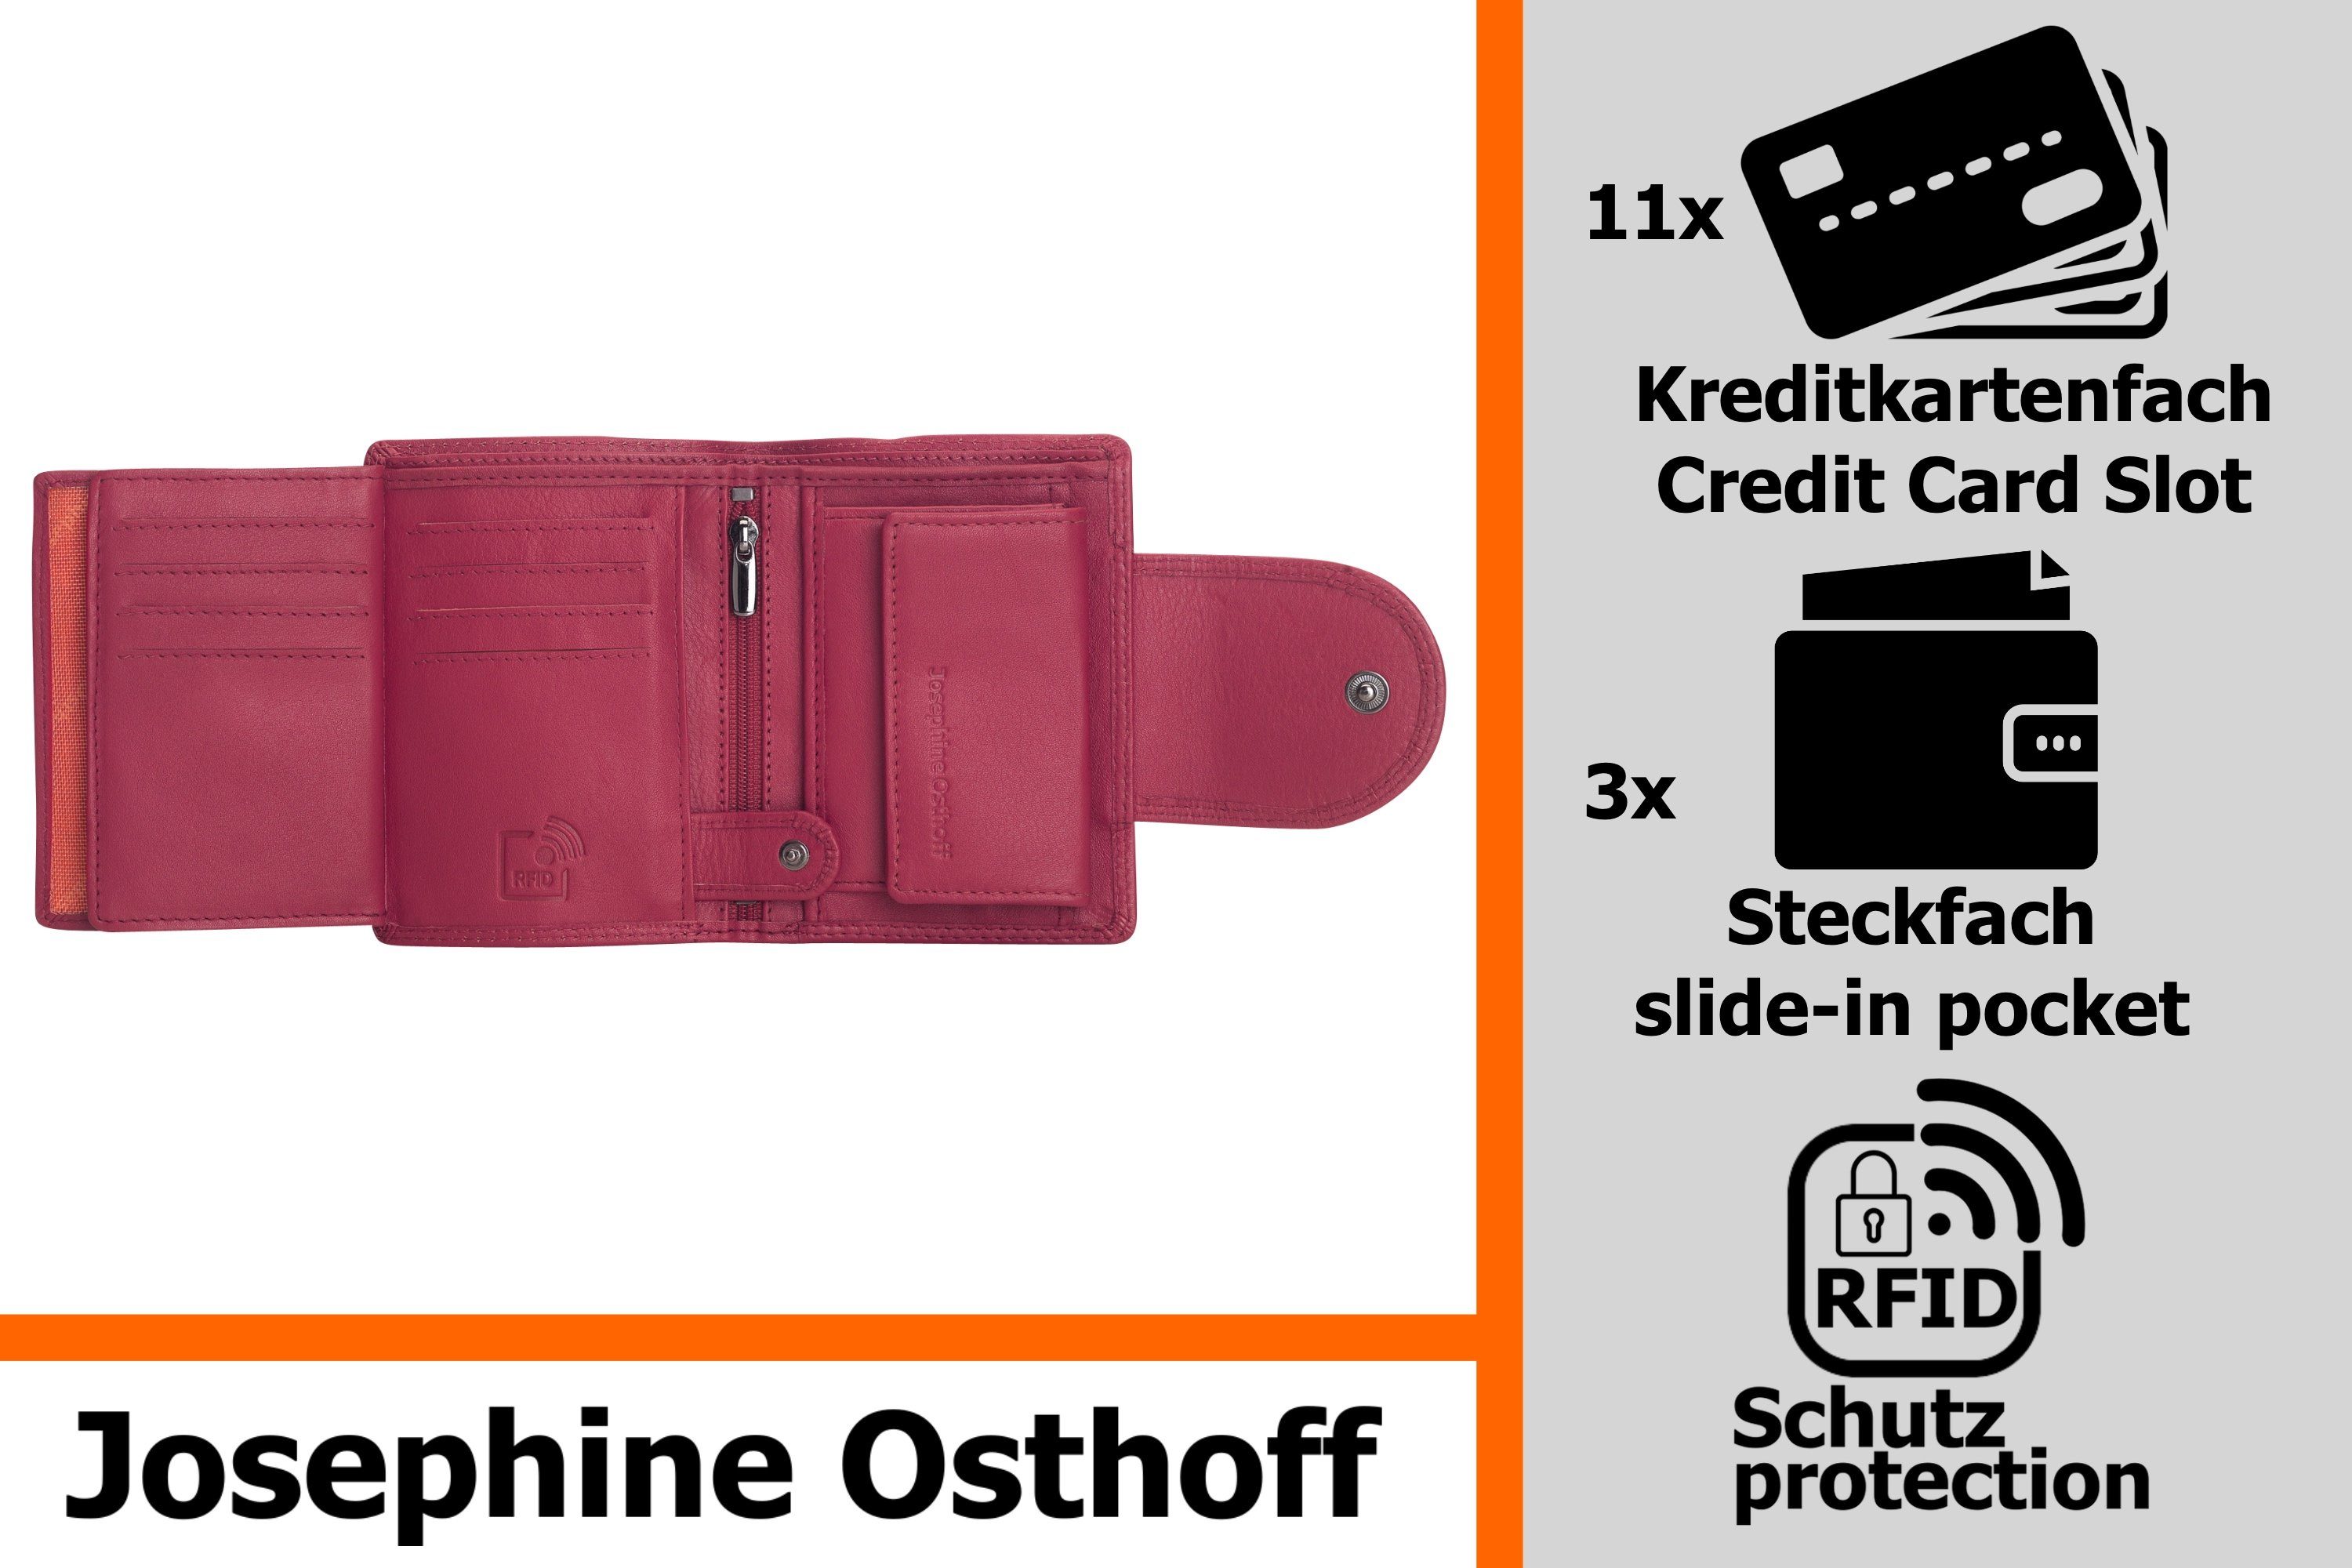 Josephine Osthoff Brieftasche Wiener Minibrieftasche fuchsia Geldbörse